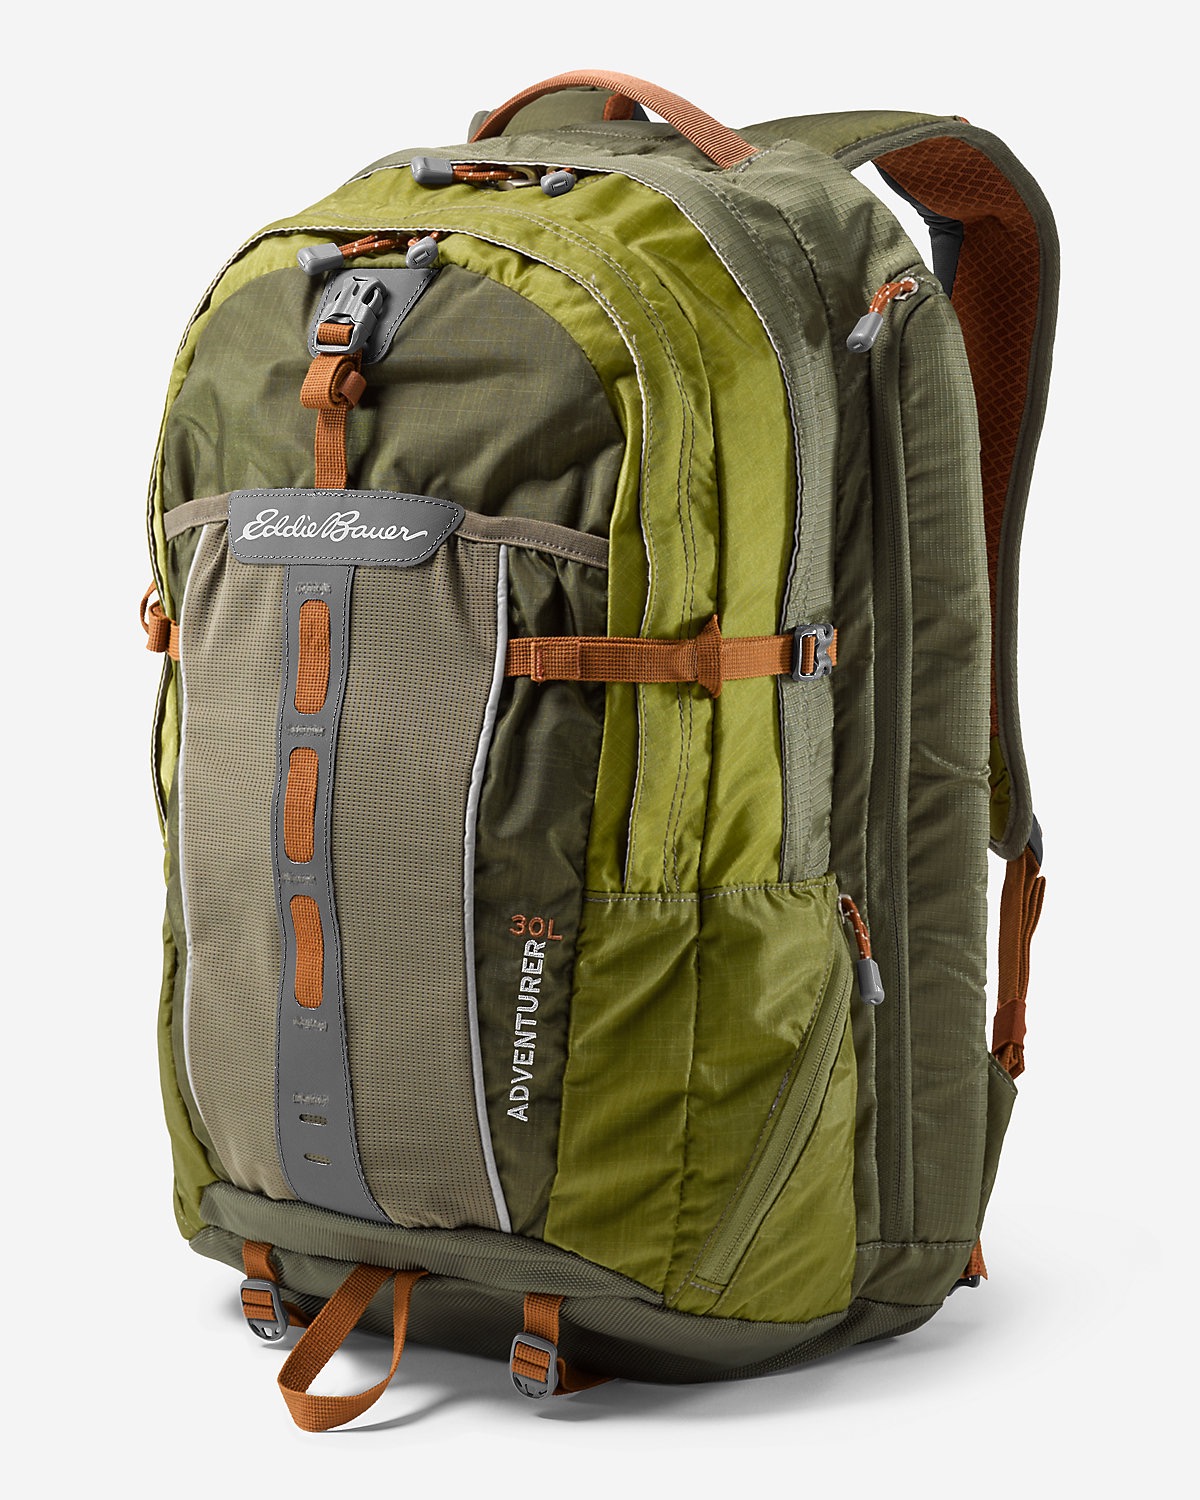 Eddie Bauer Adventurer Backpack